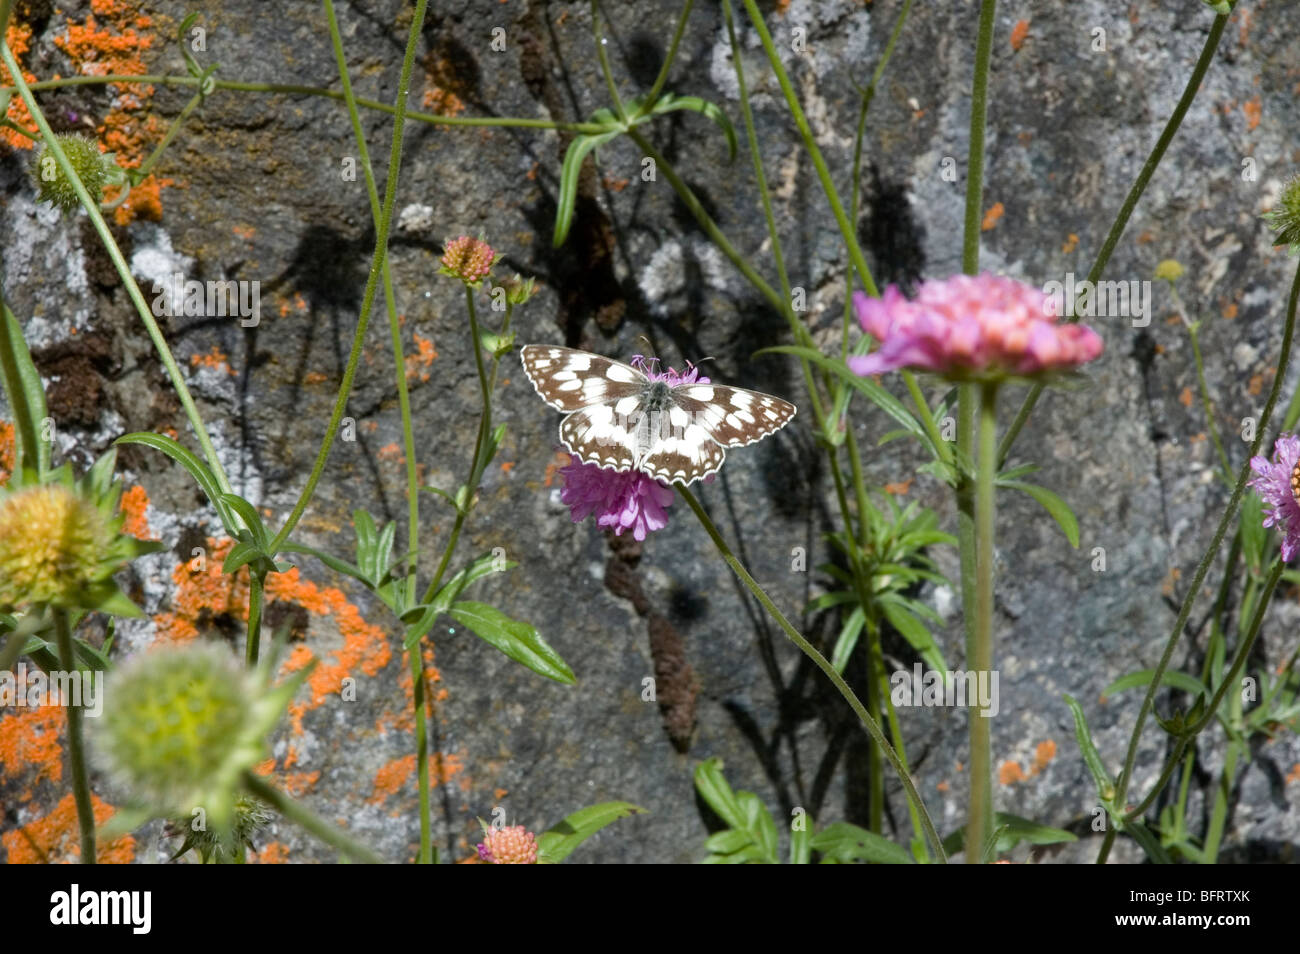 Butterfly, fiori vicino ad una roccia nel Parco Nazionale Gran Paradiso, Giardino Botanico Alpino Paradisia, Cogne, Valle d'Aosta, Italia Foto Stock